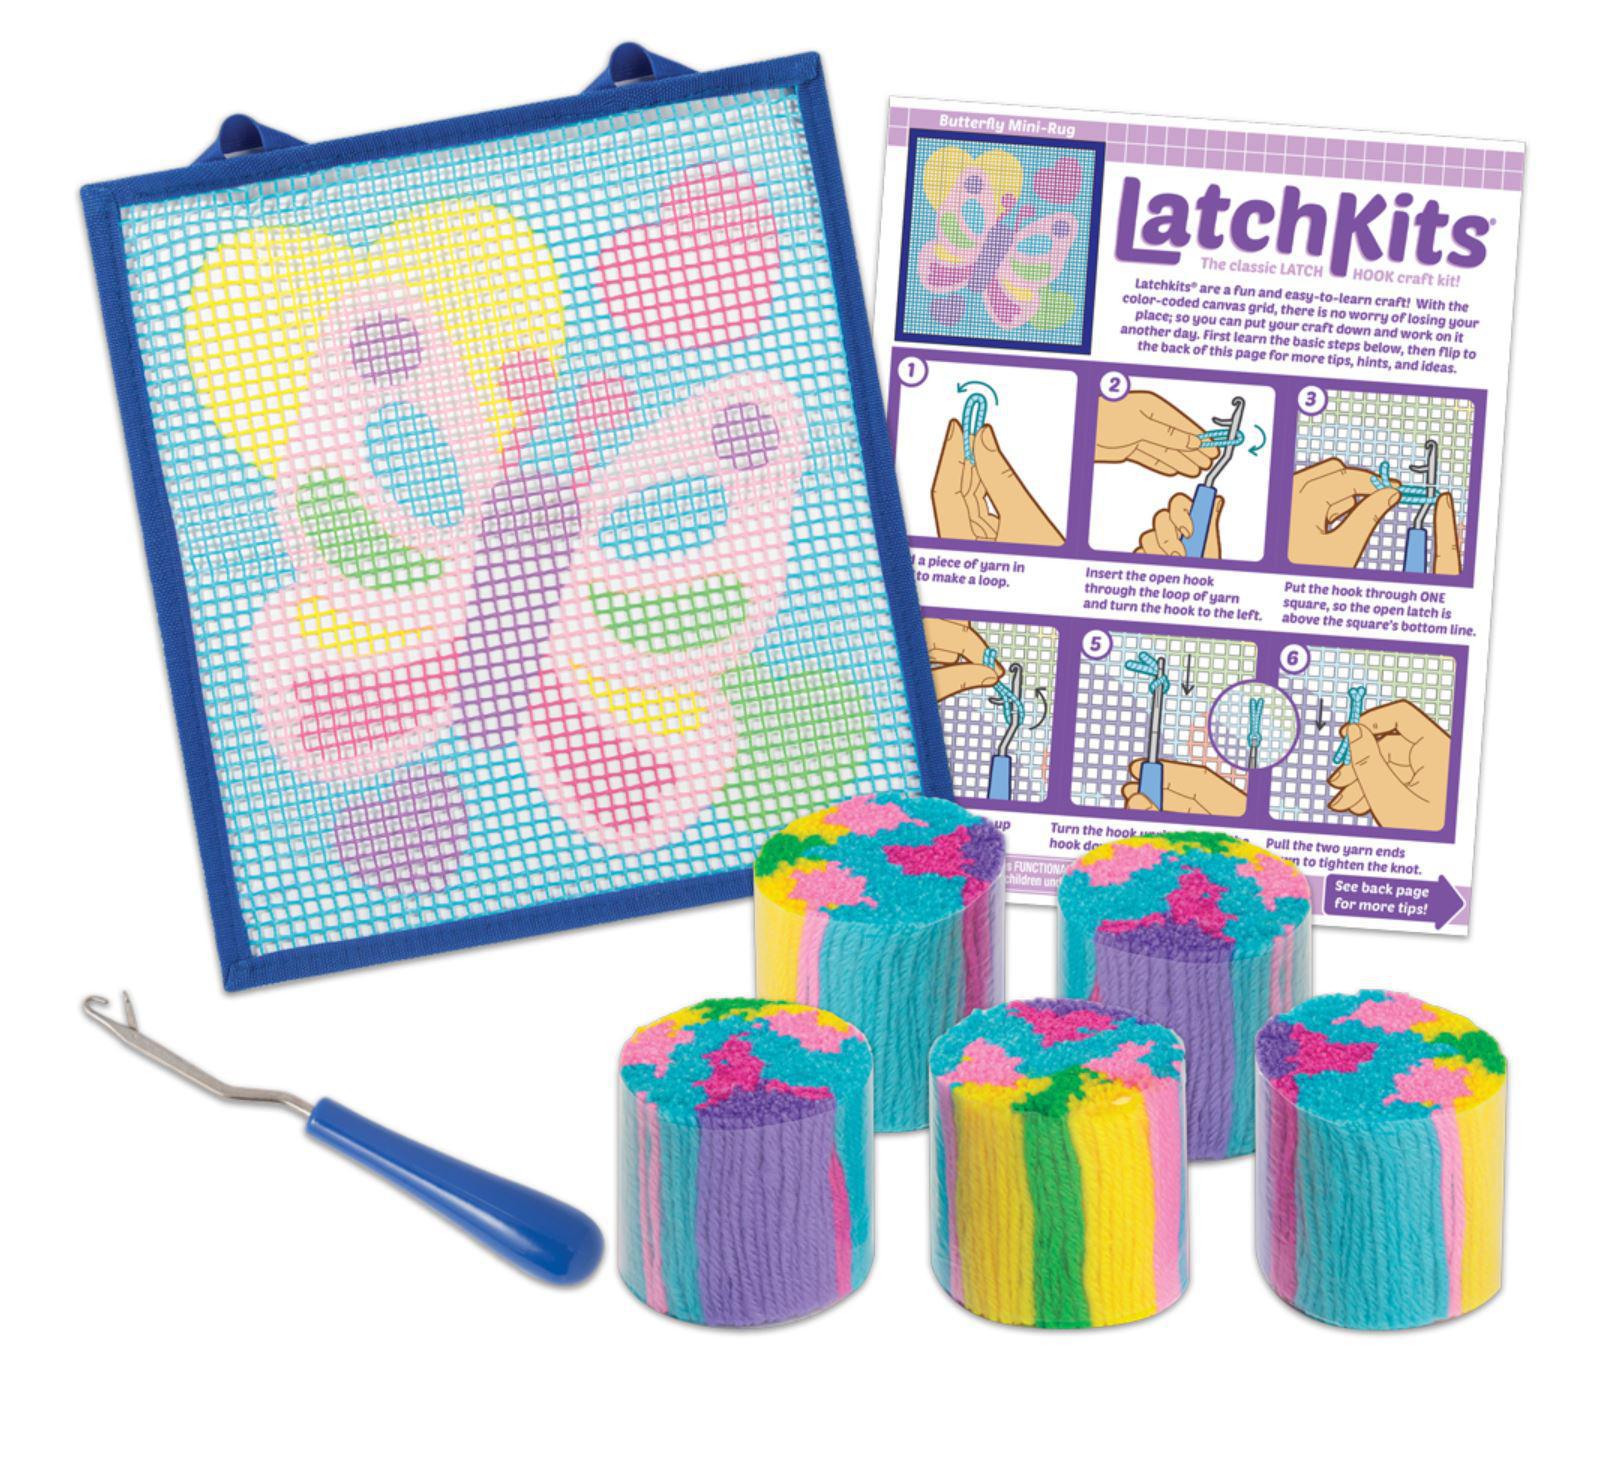 LatchKits™ Butterfly Latch Hook Kit